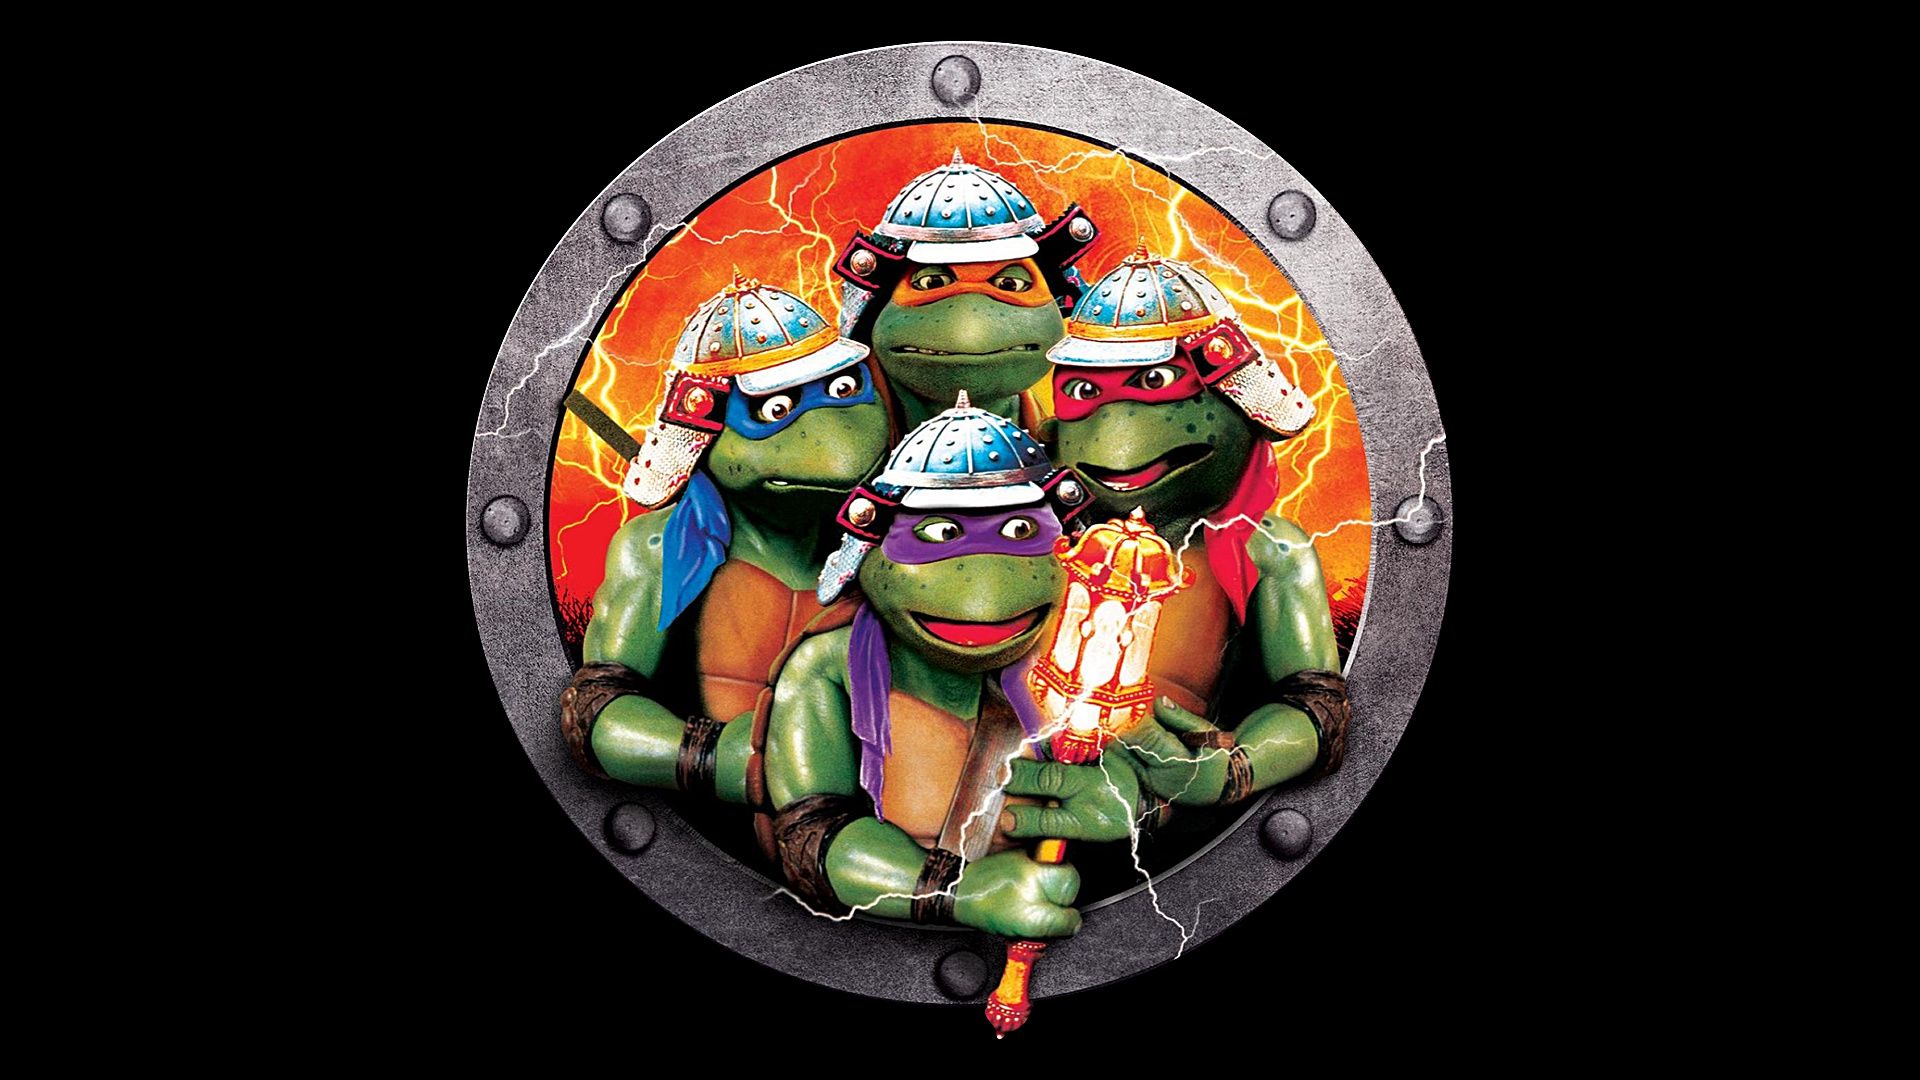 Teenage Mutant Ninja Turtles III background